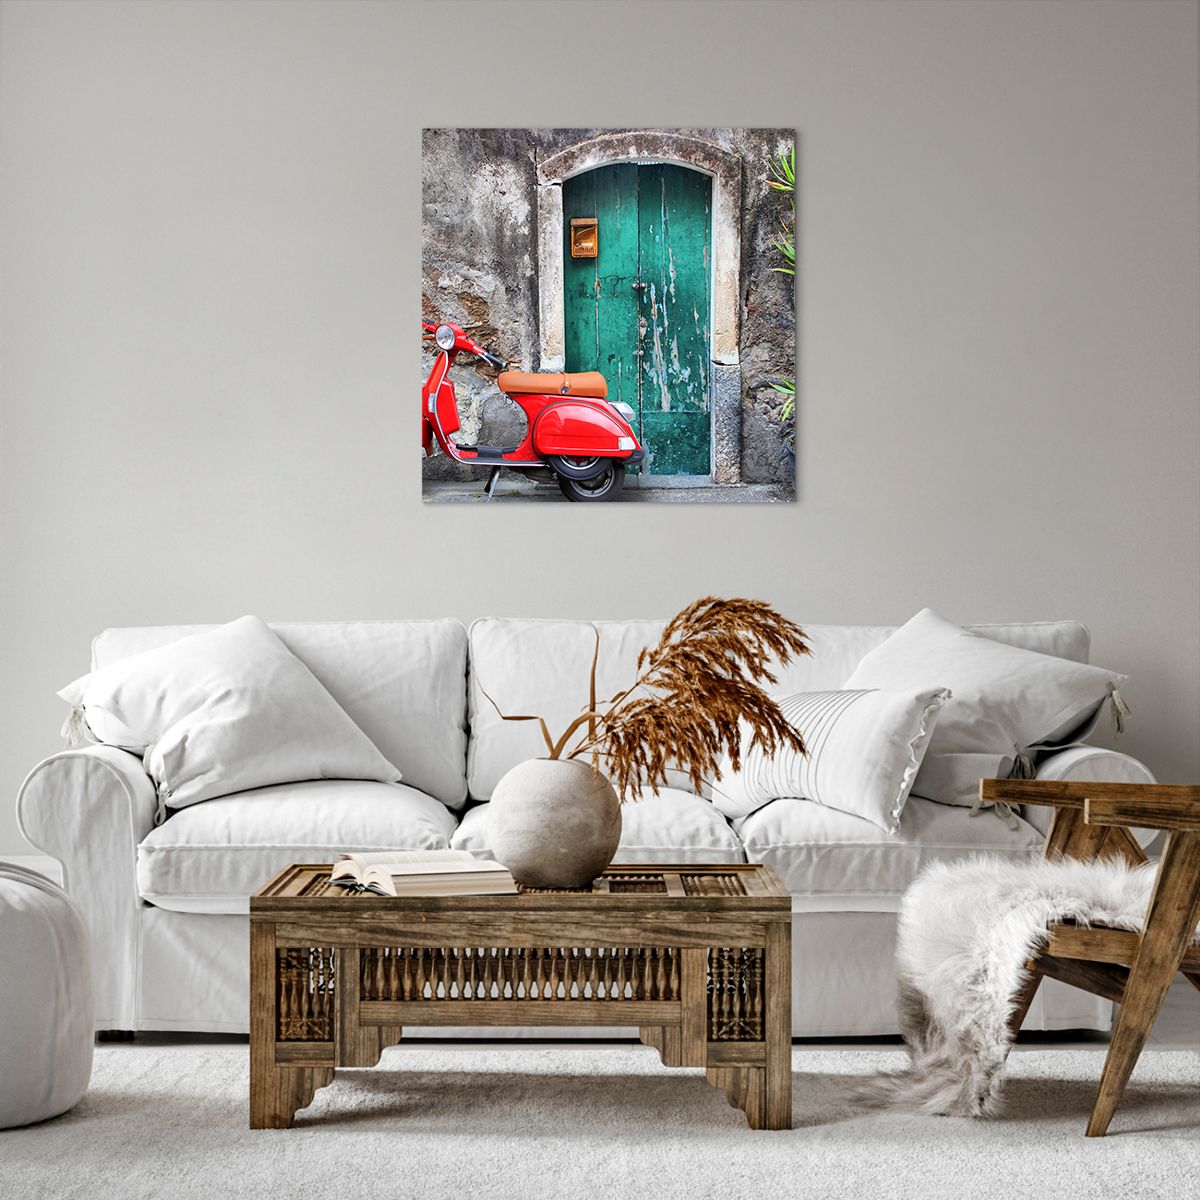 Bild auf Leinwand Automobil, Bild auf Leinwand Roller, Bild auf Leinwand Italien, Bild auf Leinwand Rotes Motorrad, Bild auf Leinwand Geheimnisvolle Tür